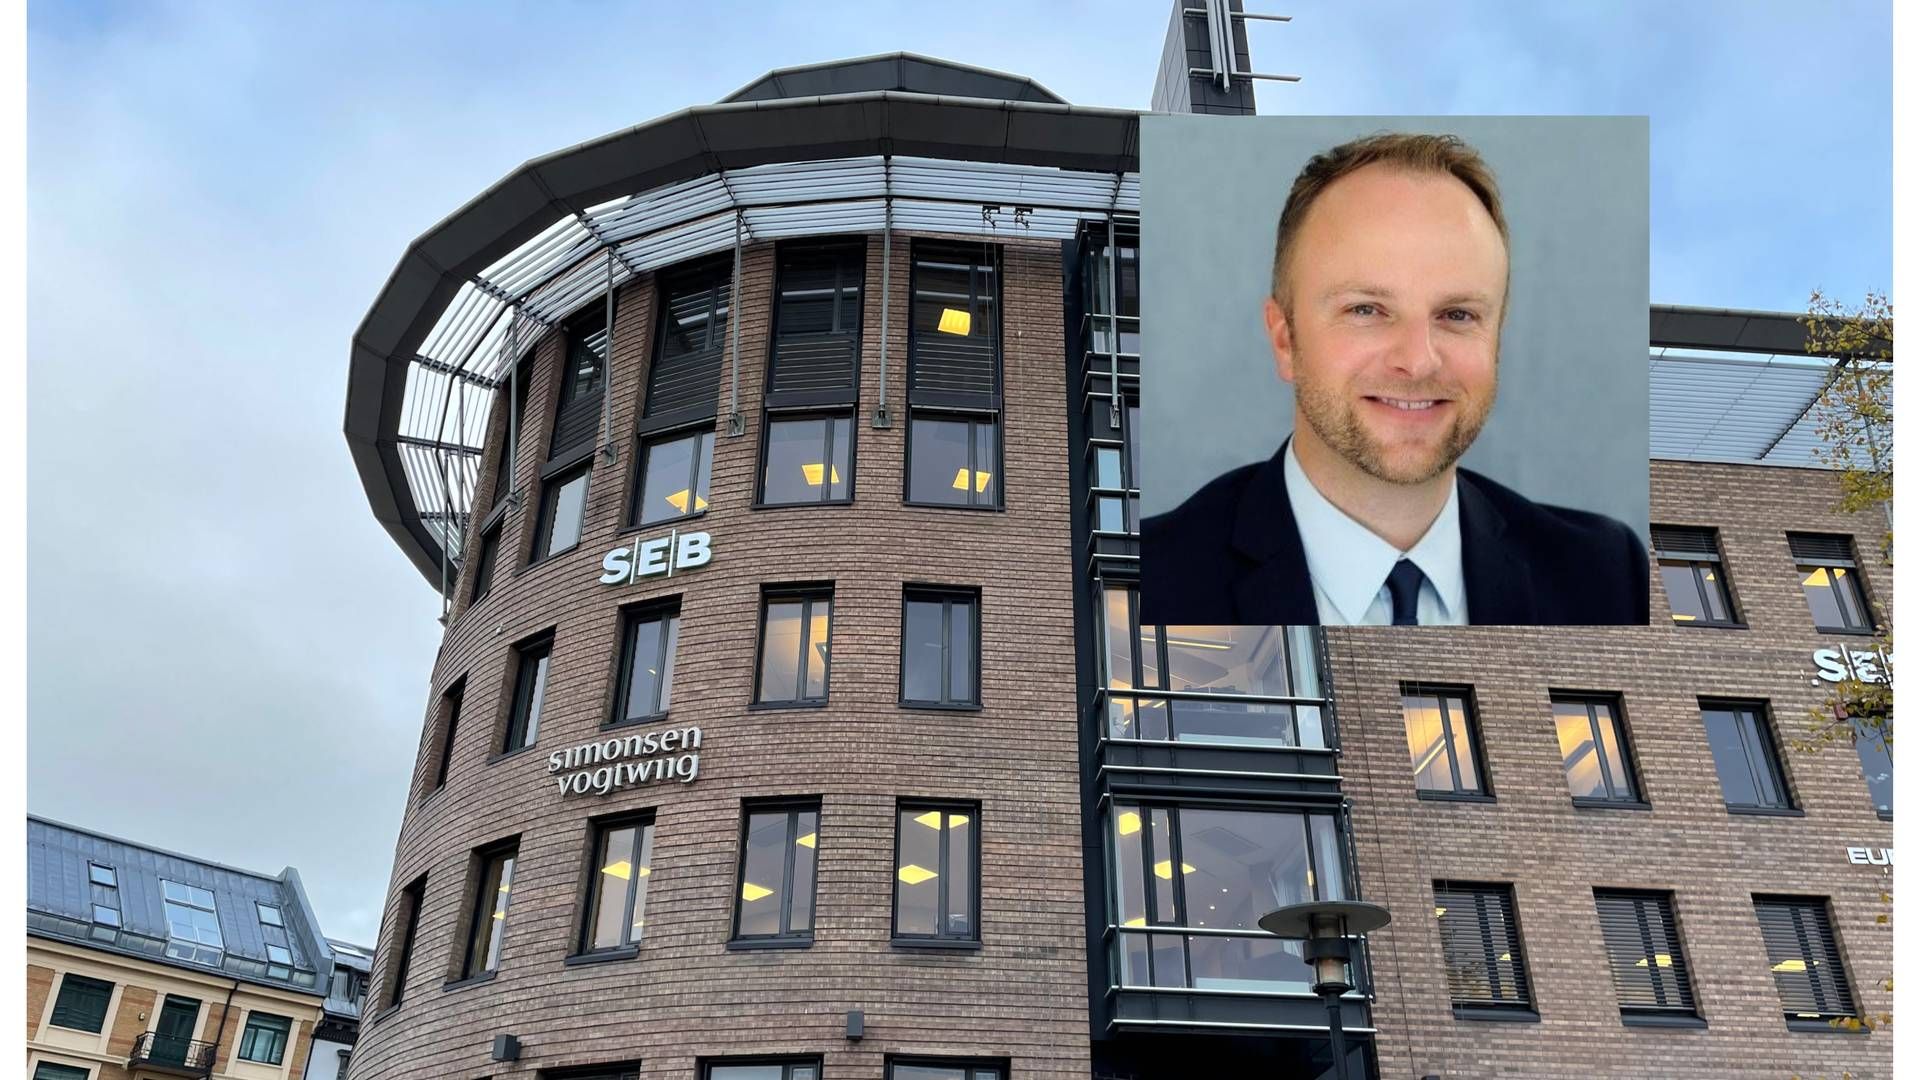 PARTNER: Simonsen Vogt Wiigs nye partner, Tor-Axel Schwerdt (innfelt), skal jobbe ved advokatfirmaets kontor i Stavanger. Dette er et bilde av kontoret i Oslo. | Foto: Stian Olsen/LinkedIn